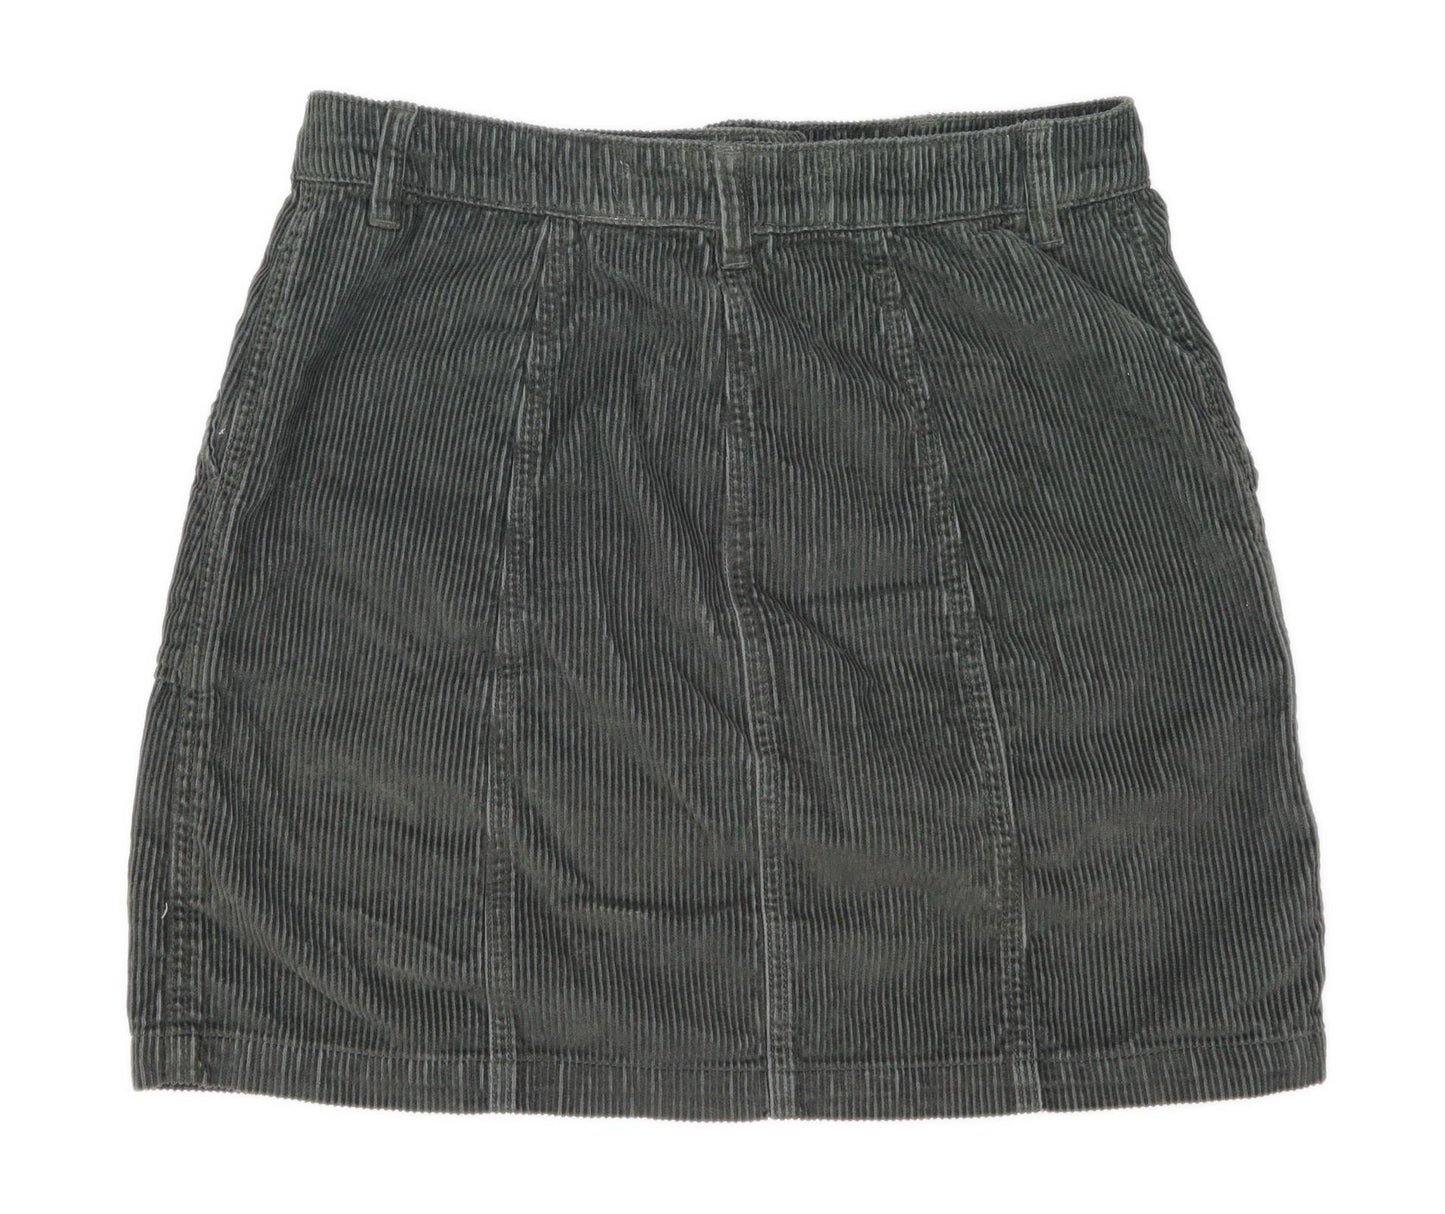 Next Womens Size 10 Corduroy Green Skirt (Regular)